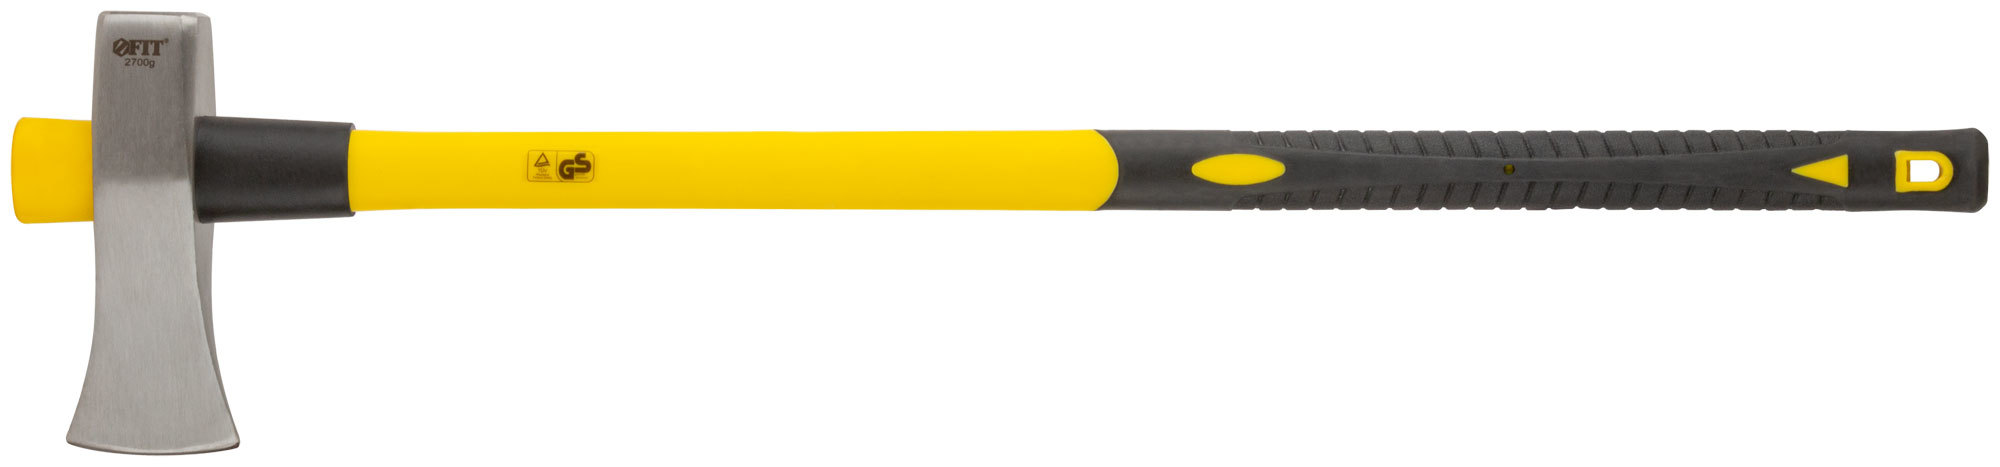 Топор-колун кованый, фиберглассовая длинная ручка 900 мм, 2700 гр.